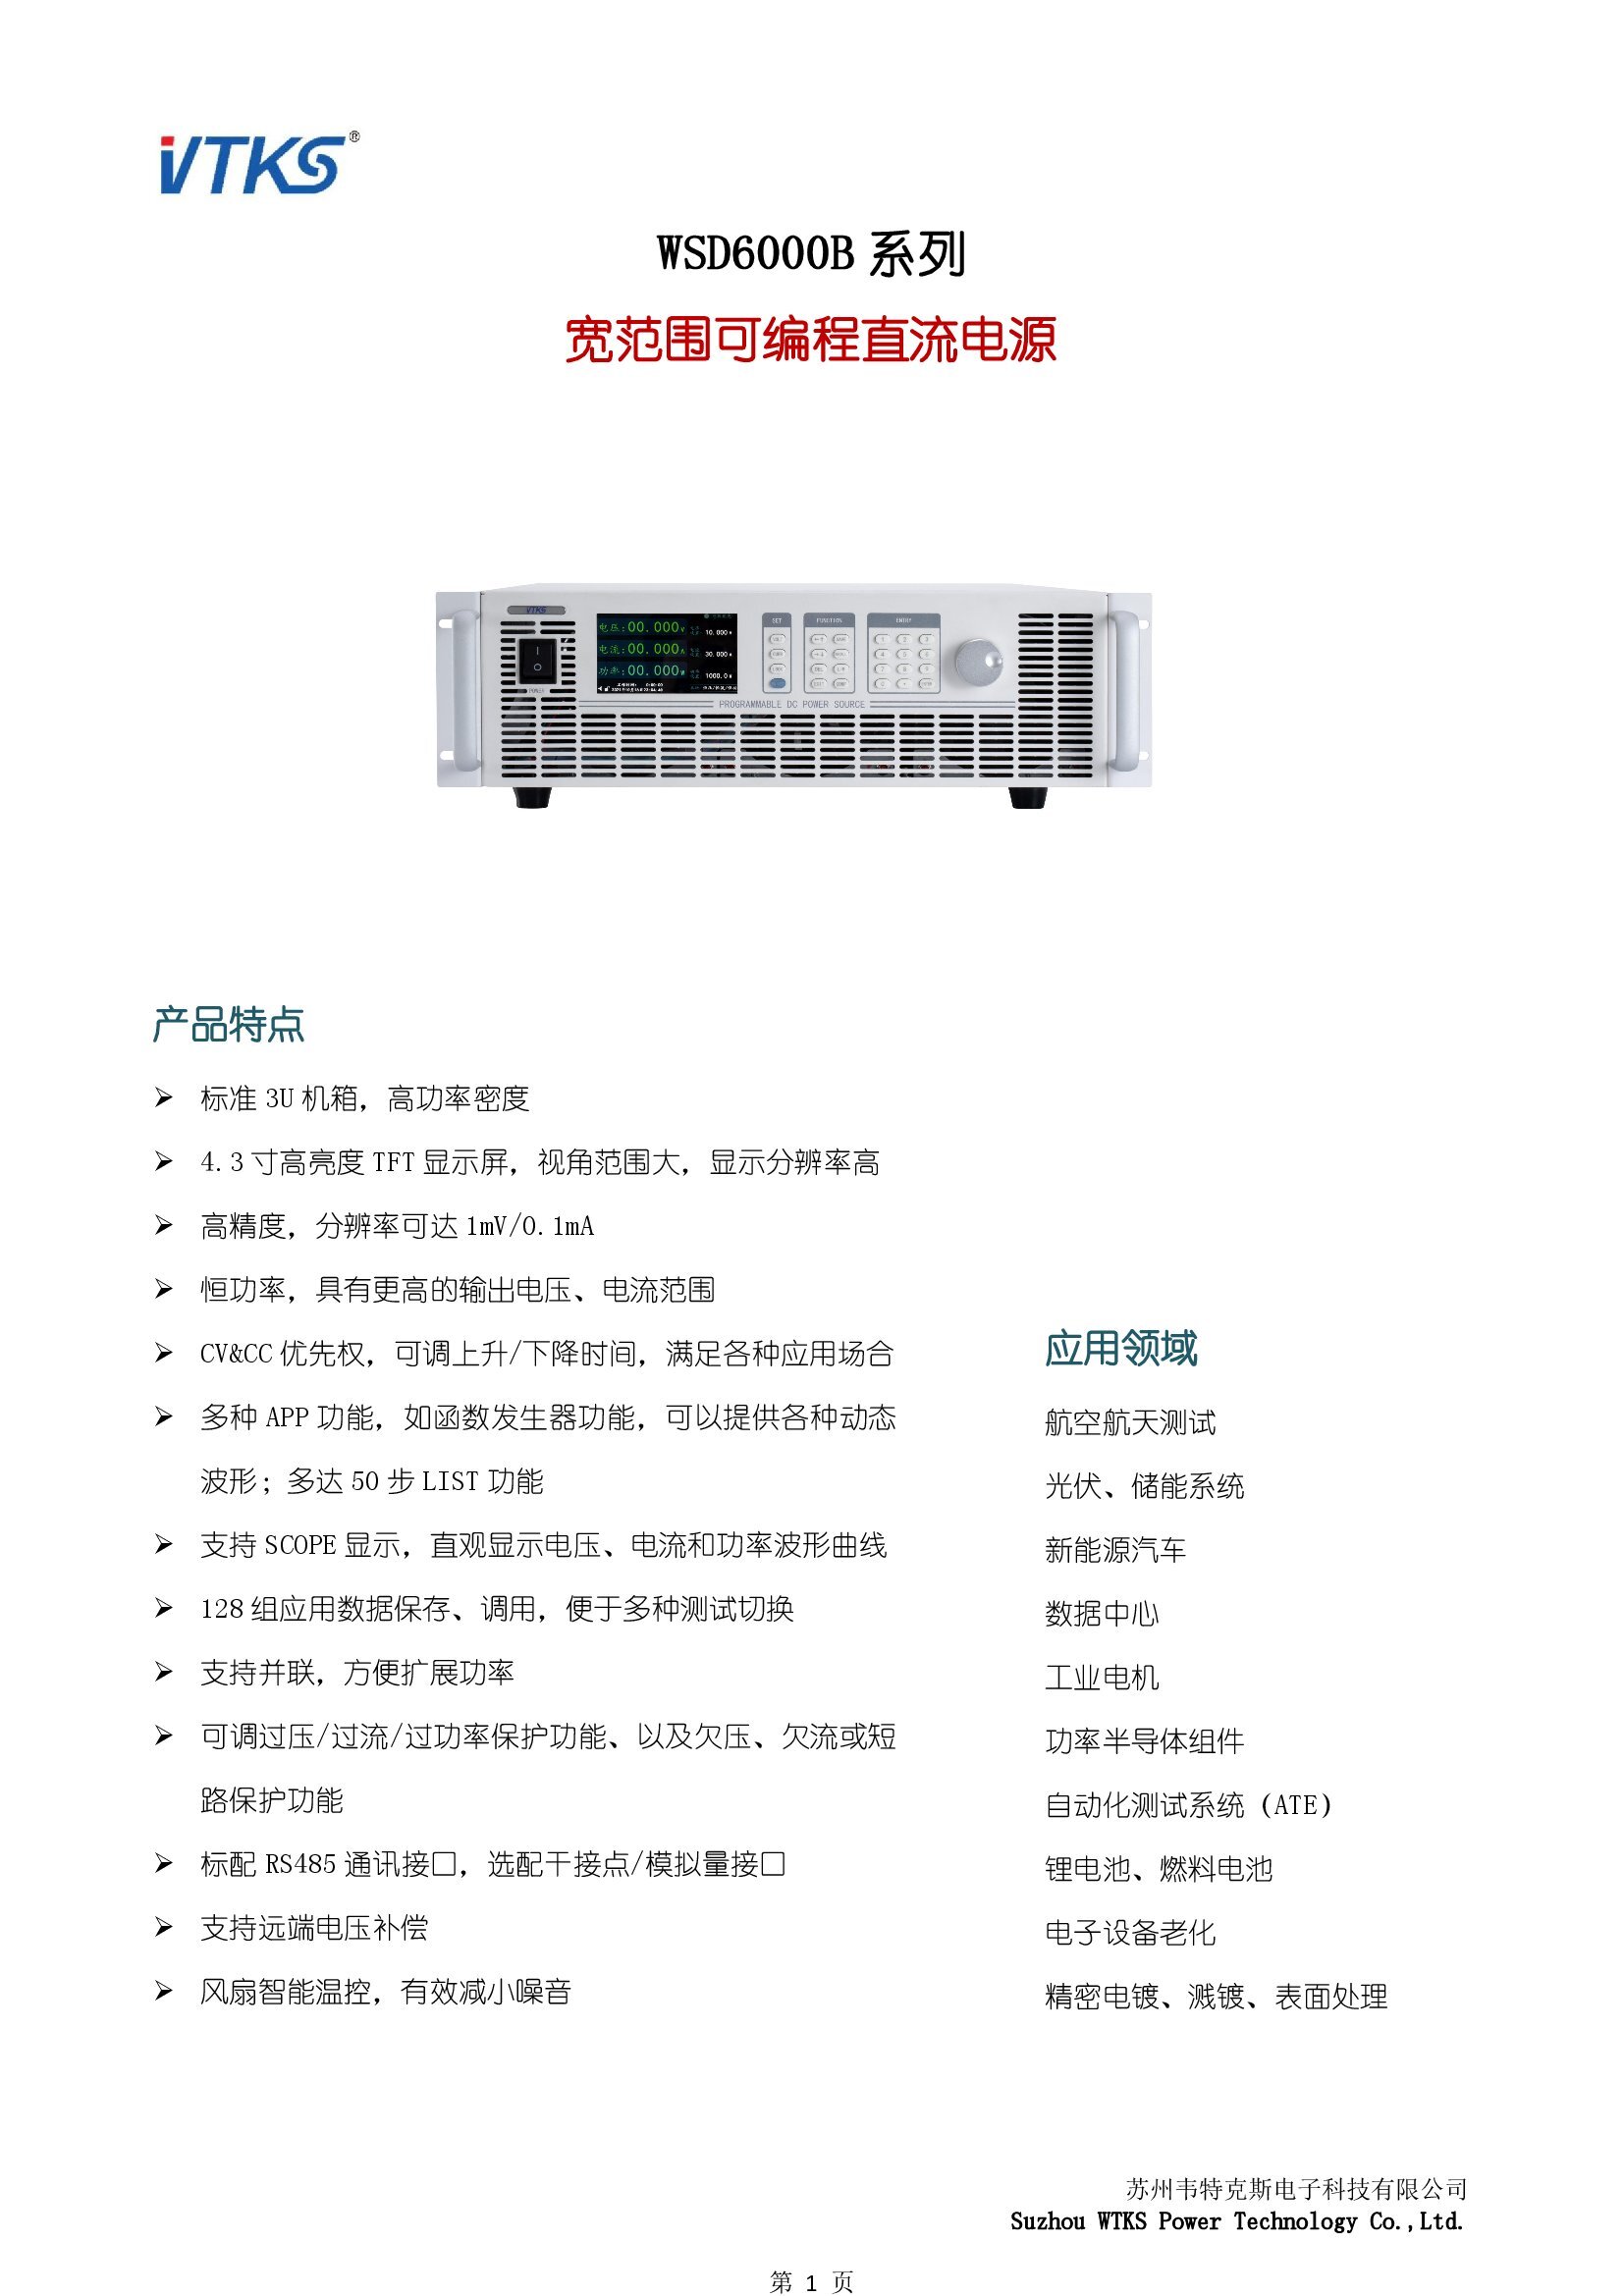 WSD6000B系列宽范围可编程直流电源技术资料_V1.14_00001.jpg